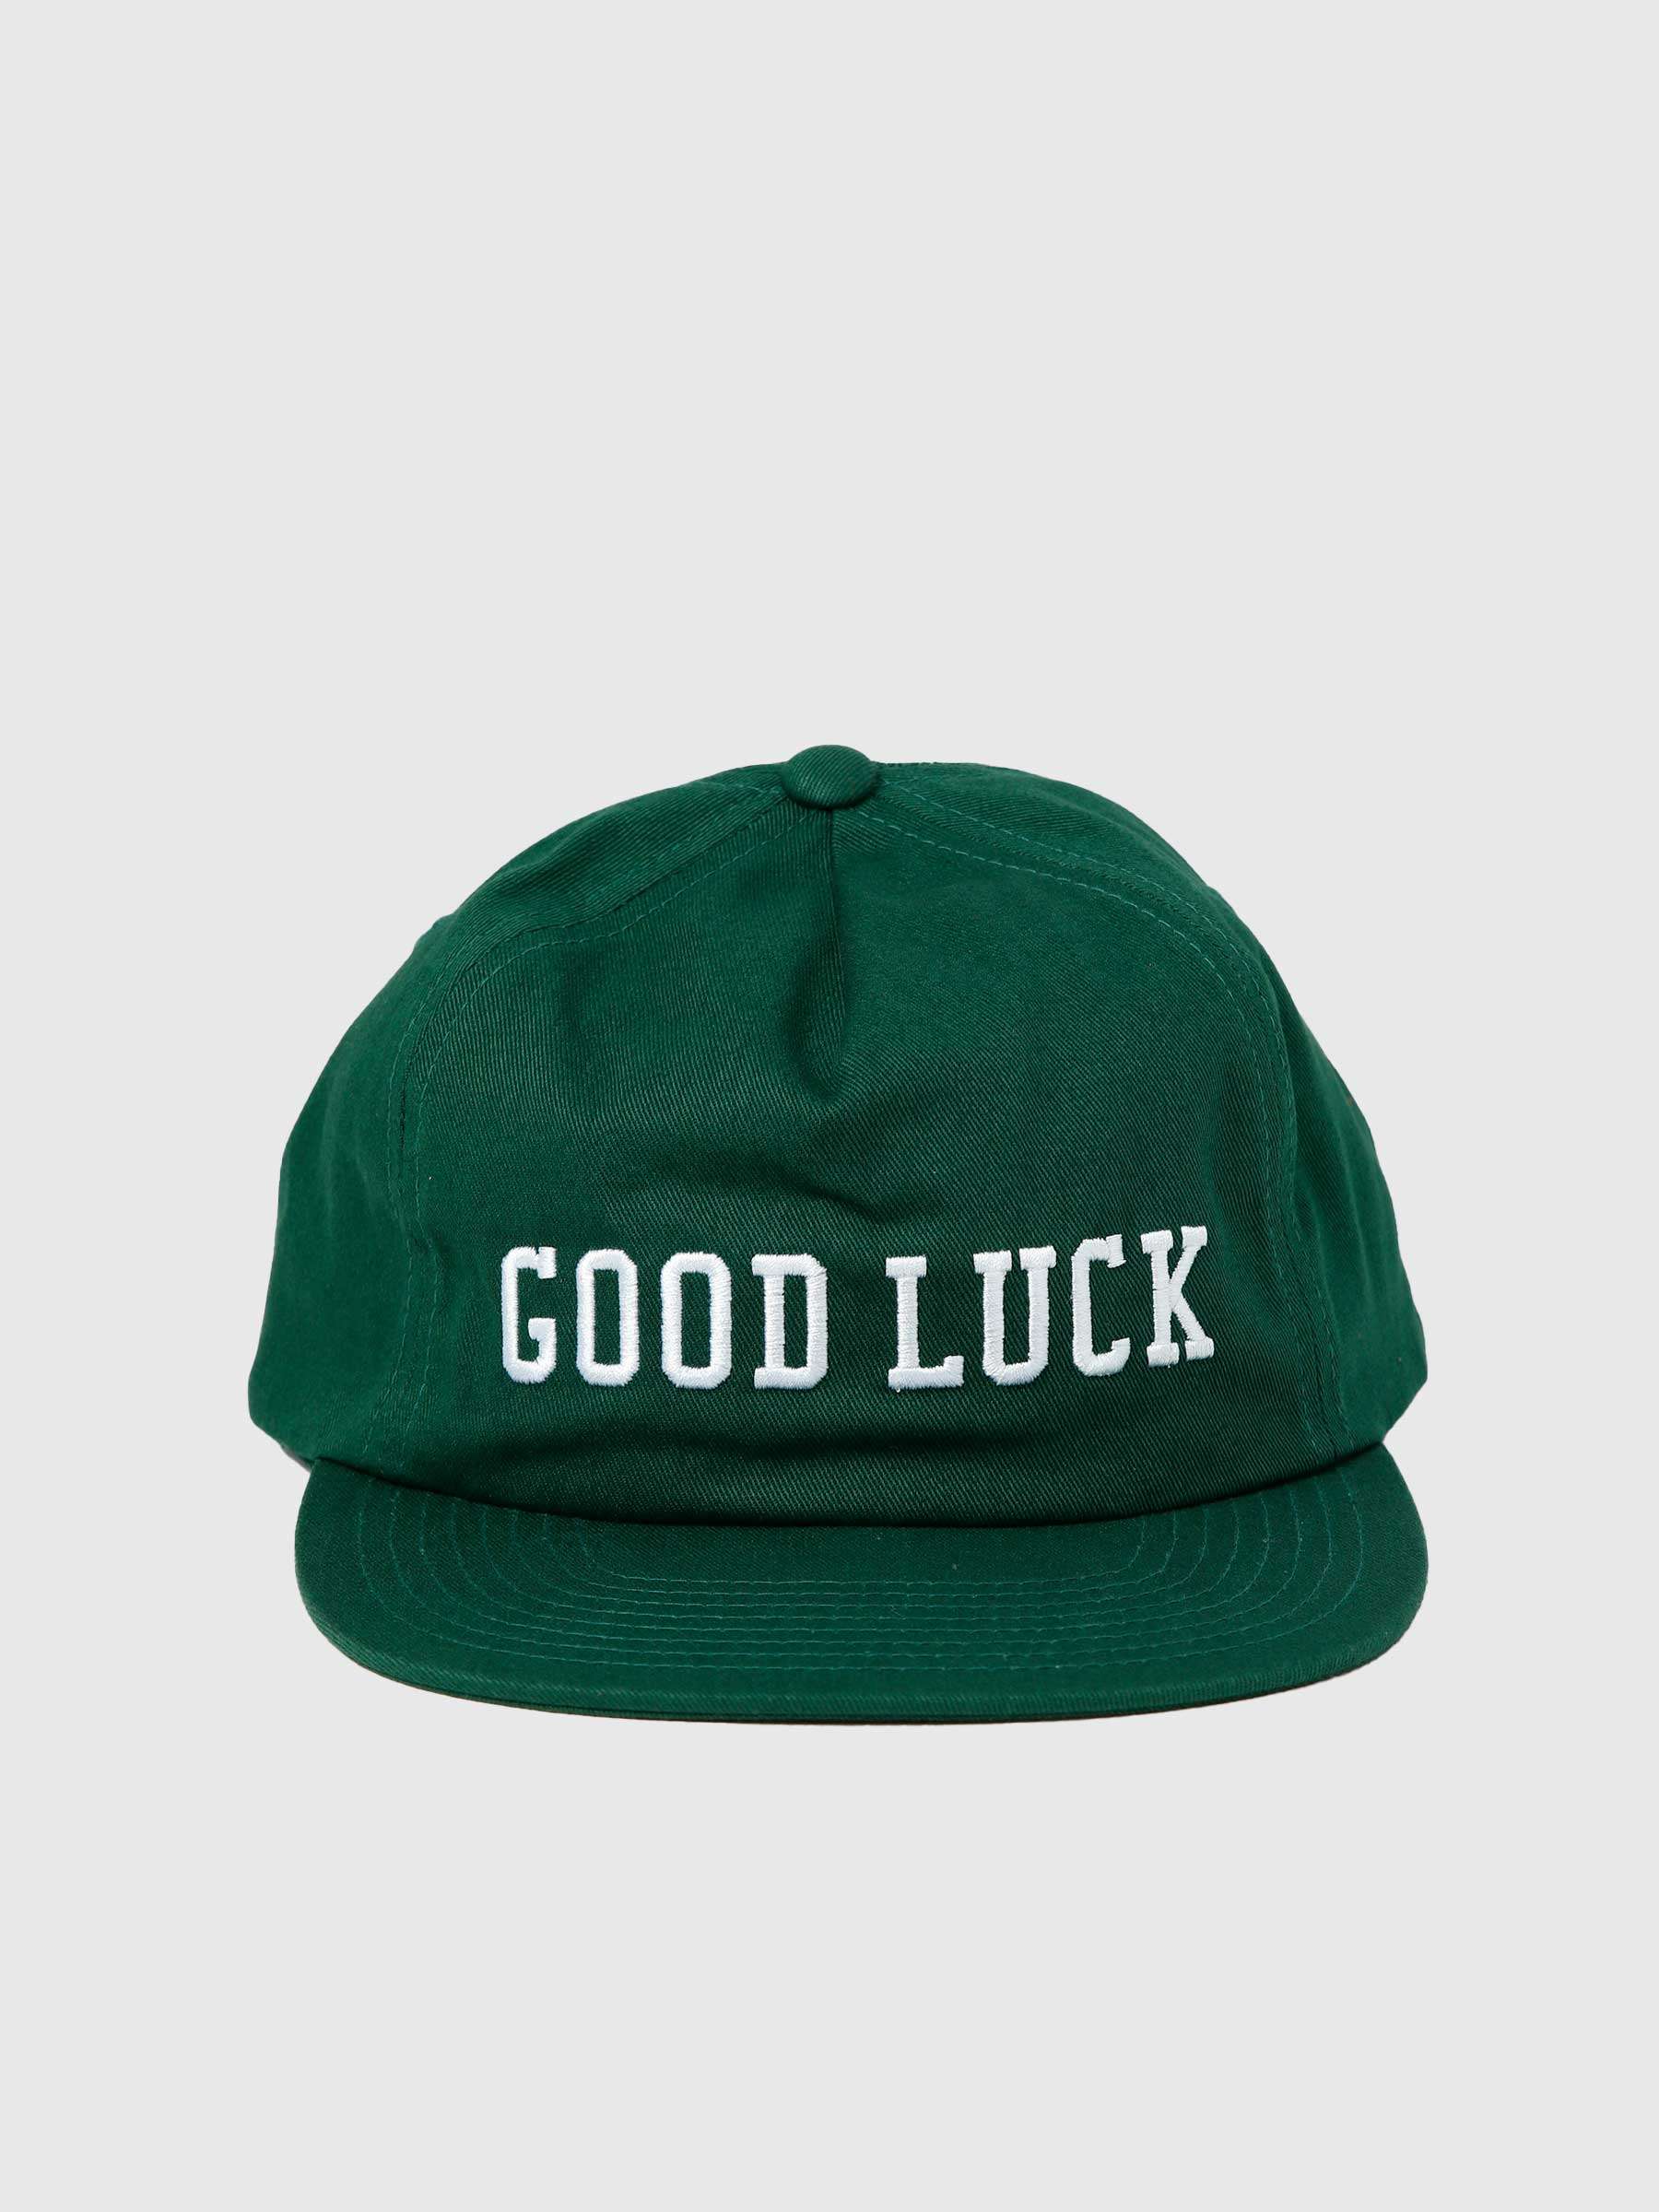 Goodluck Snapback Dark Green HT00606